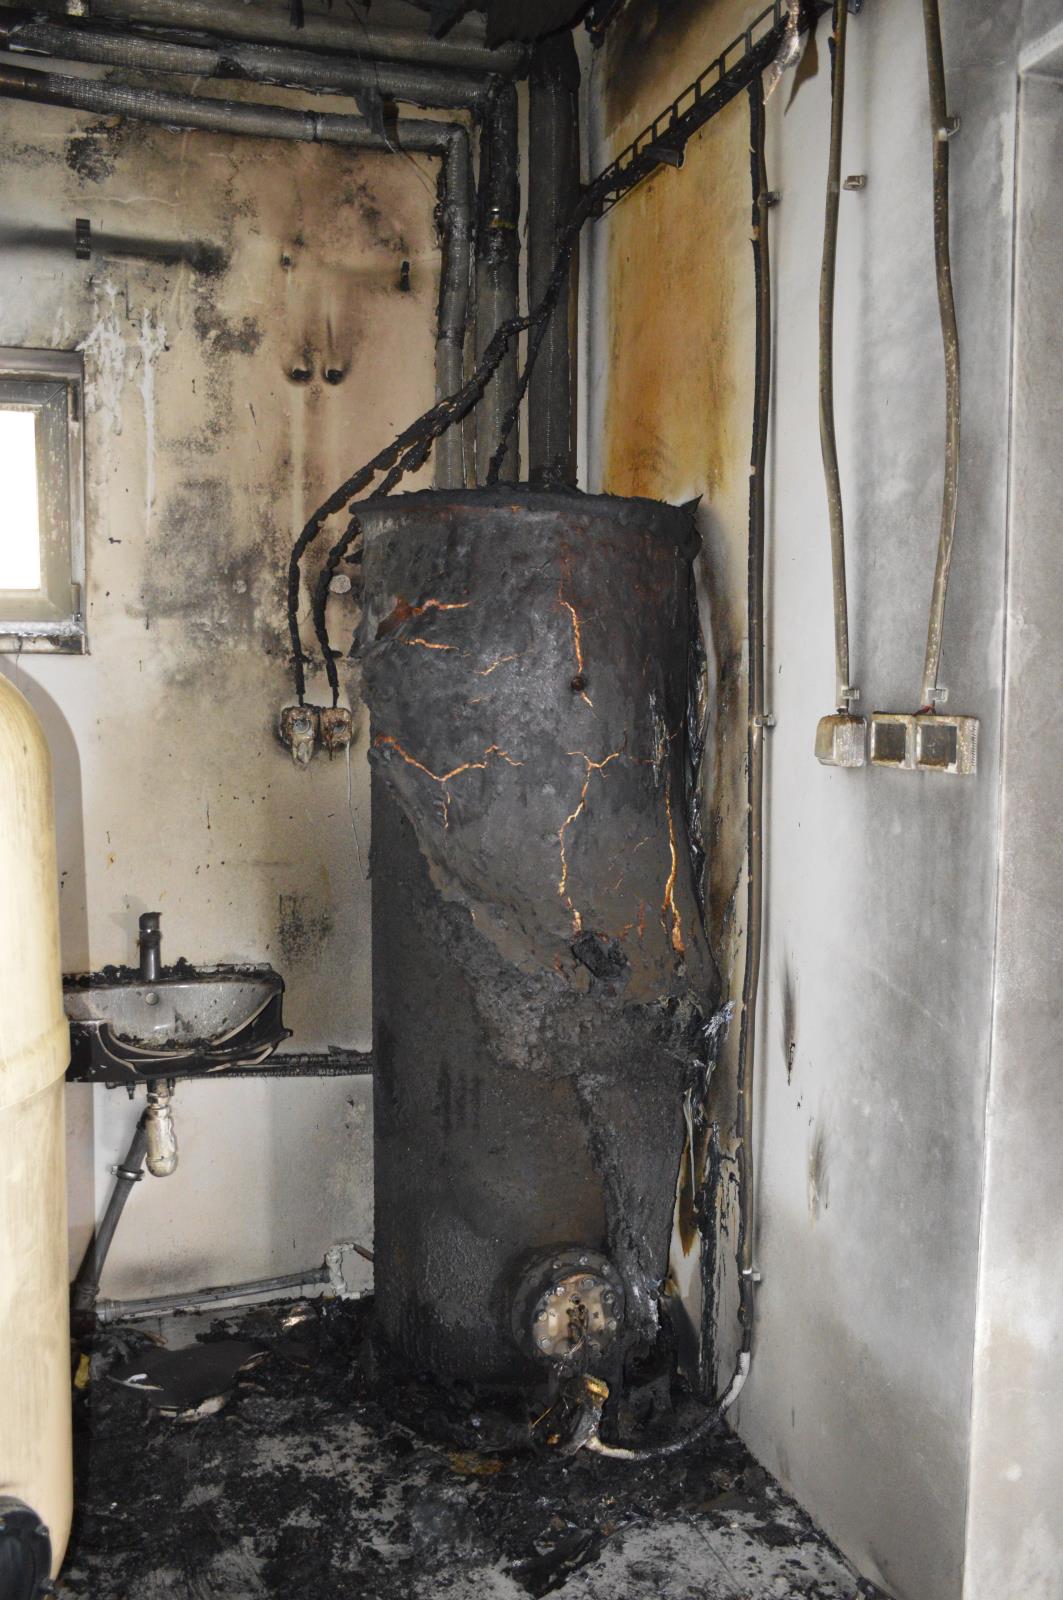 Následky požáru boileru bez zapojených jistících prvků